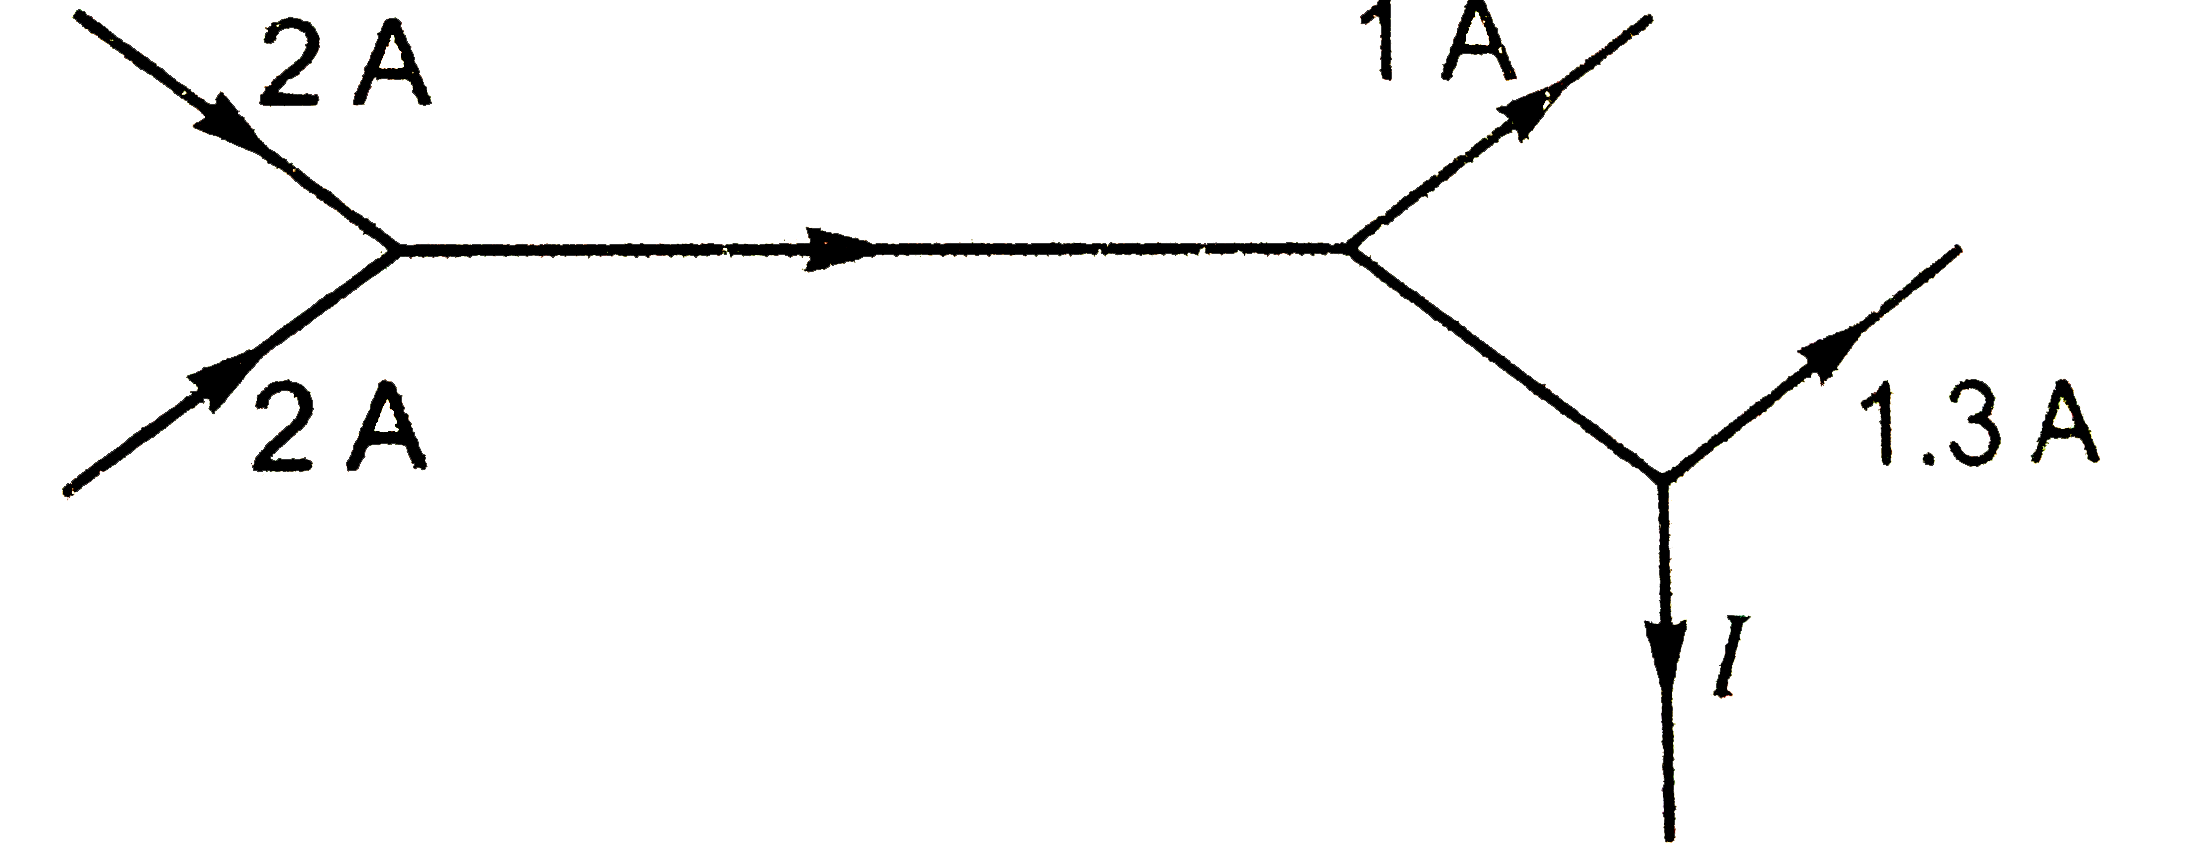 परिपथ के किसी भाग में धारा वितरण को निम्न चित्र में प्रदर्शित किया गया है । तब धारा I का मान है -